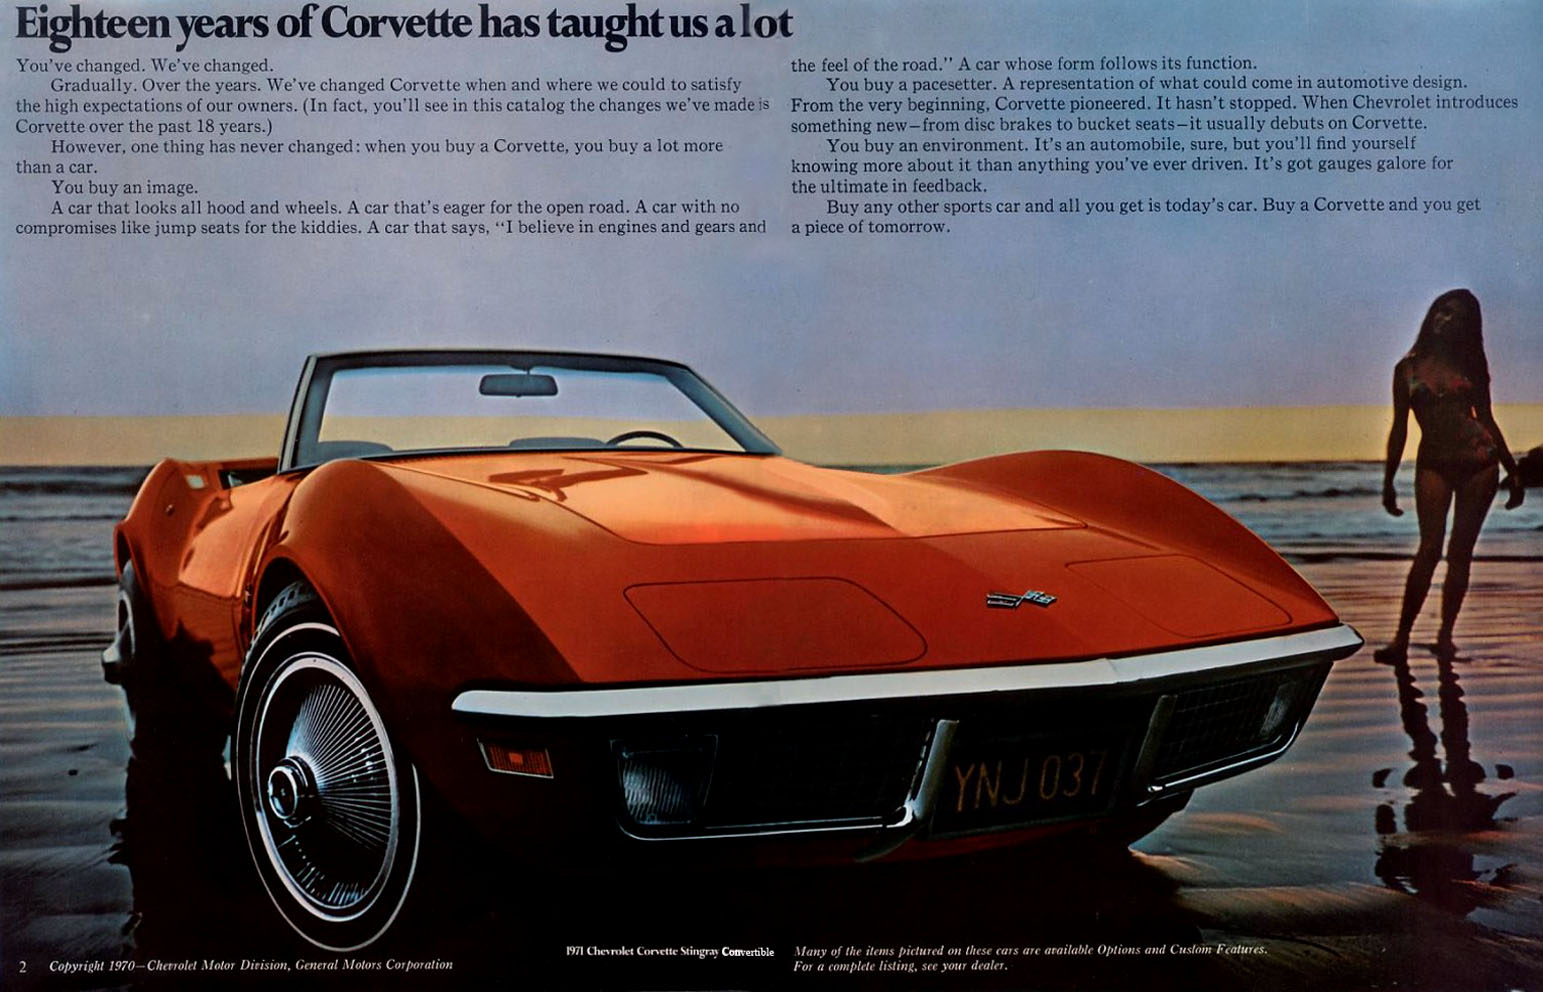 1971 Chevrolet Corvette-02-03